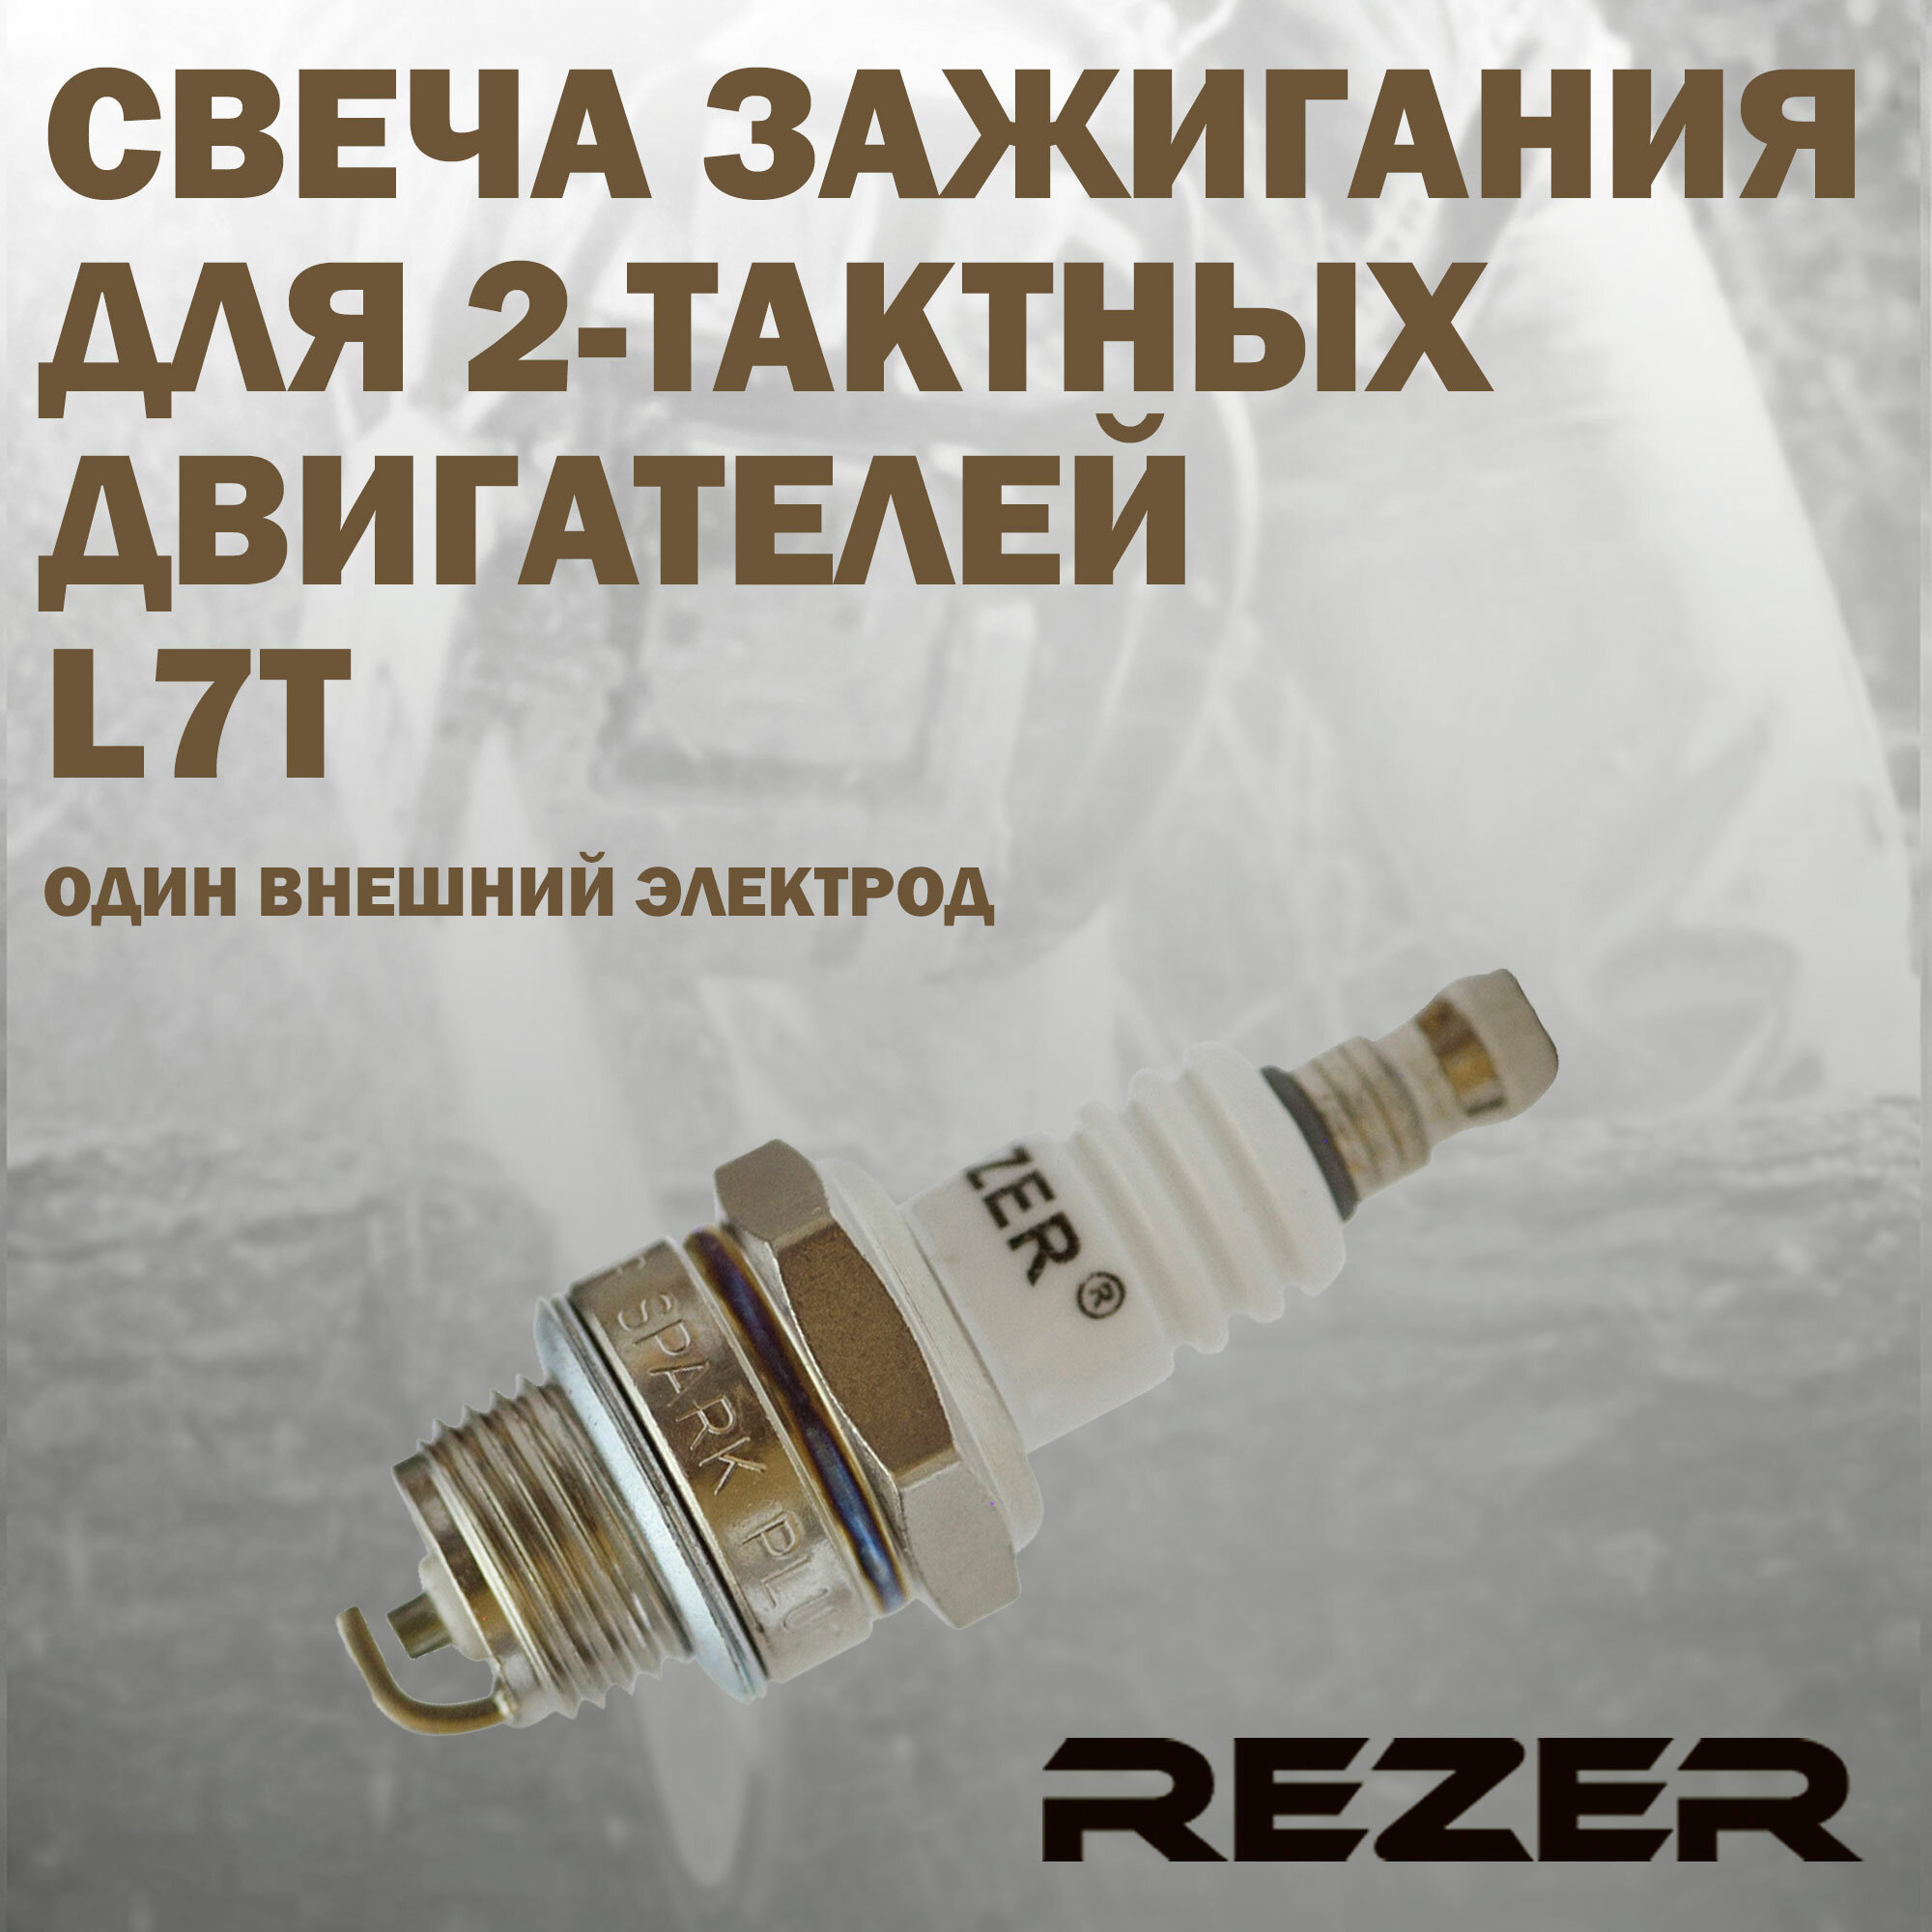 Свеча зажигания Rezer L7T для 2-тактных двигателей Stihl, Husqvarna, Partner, Champion, Carver и другие